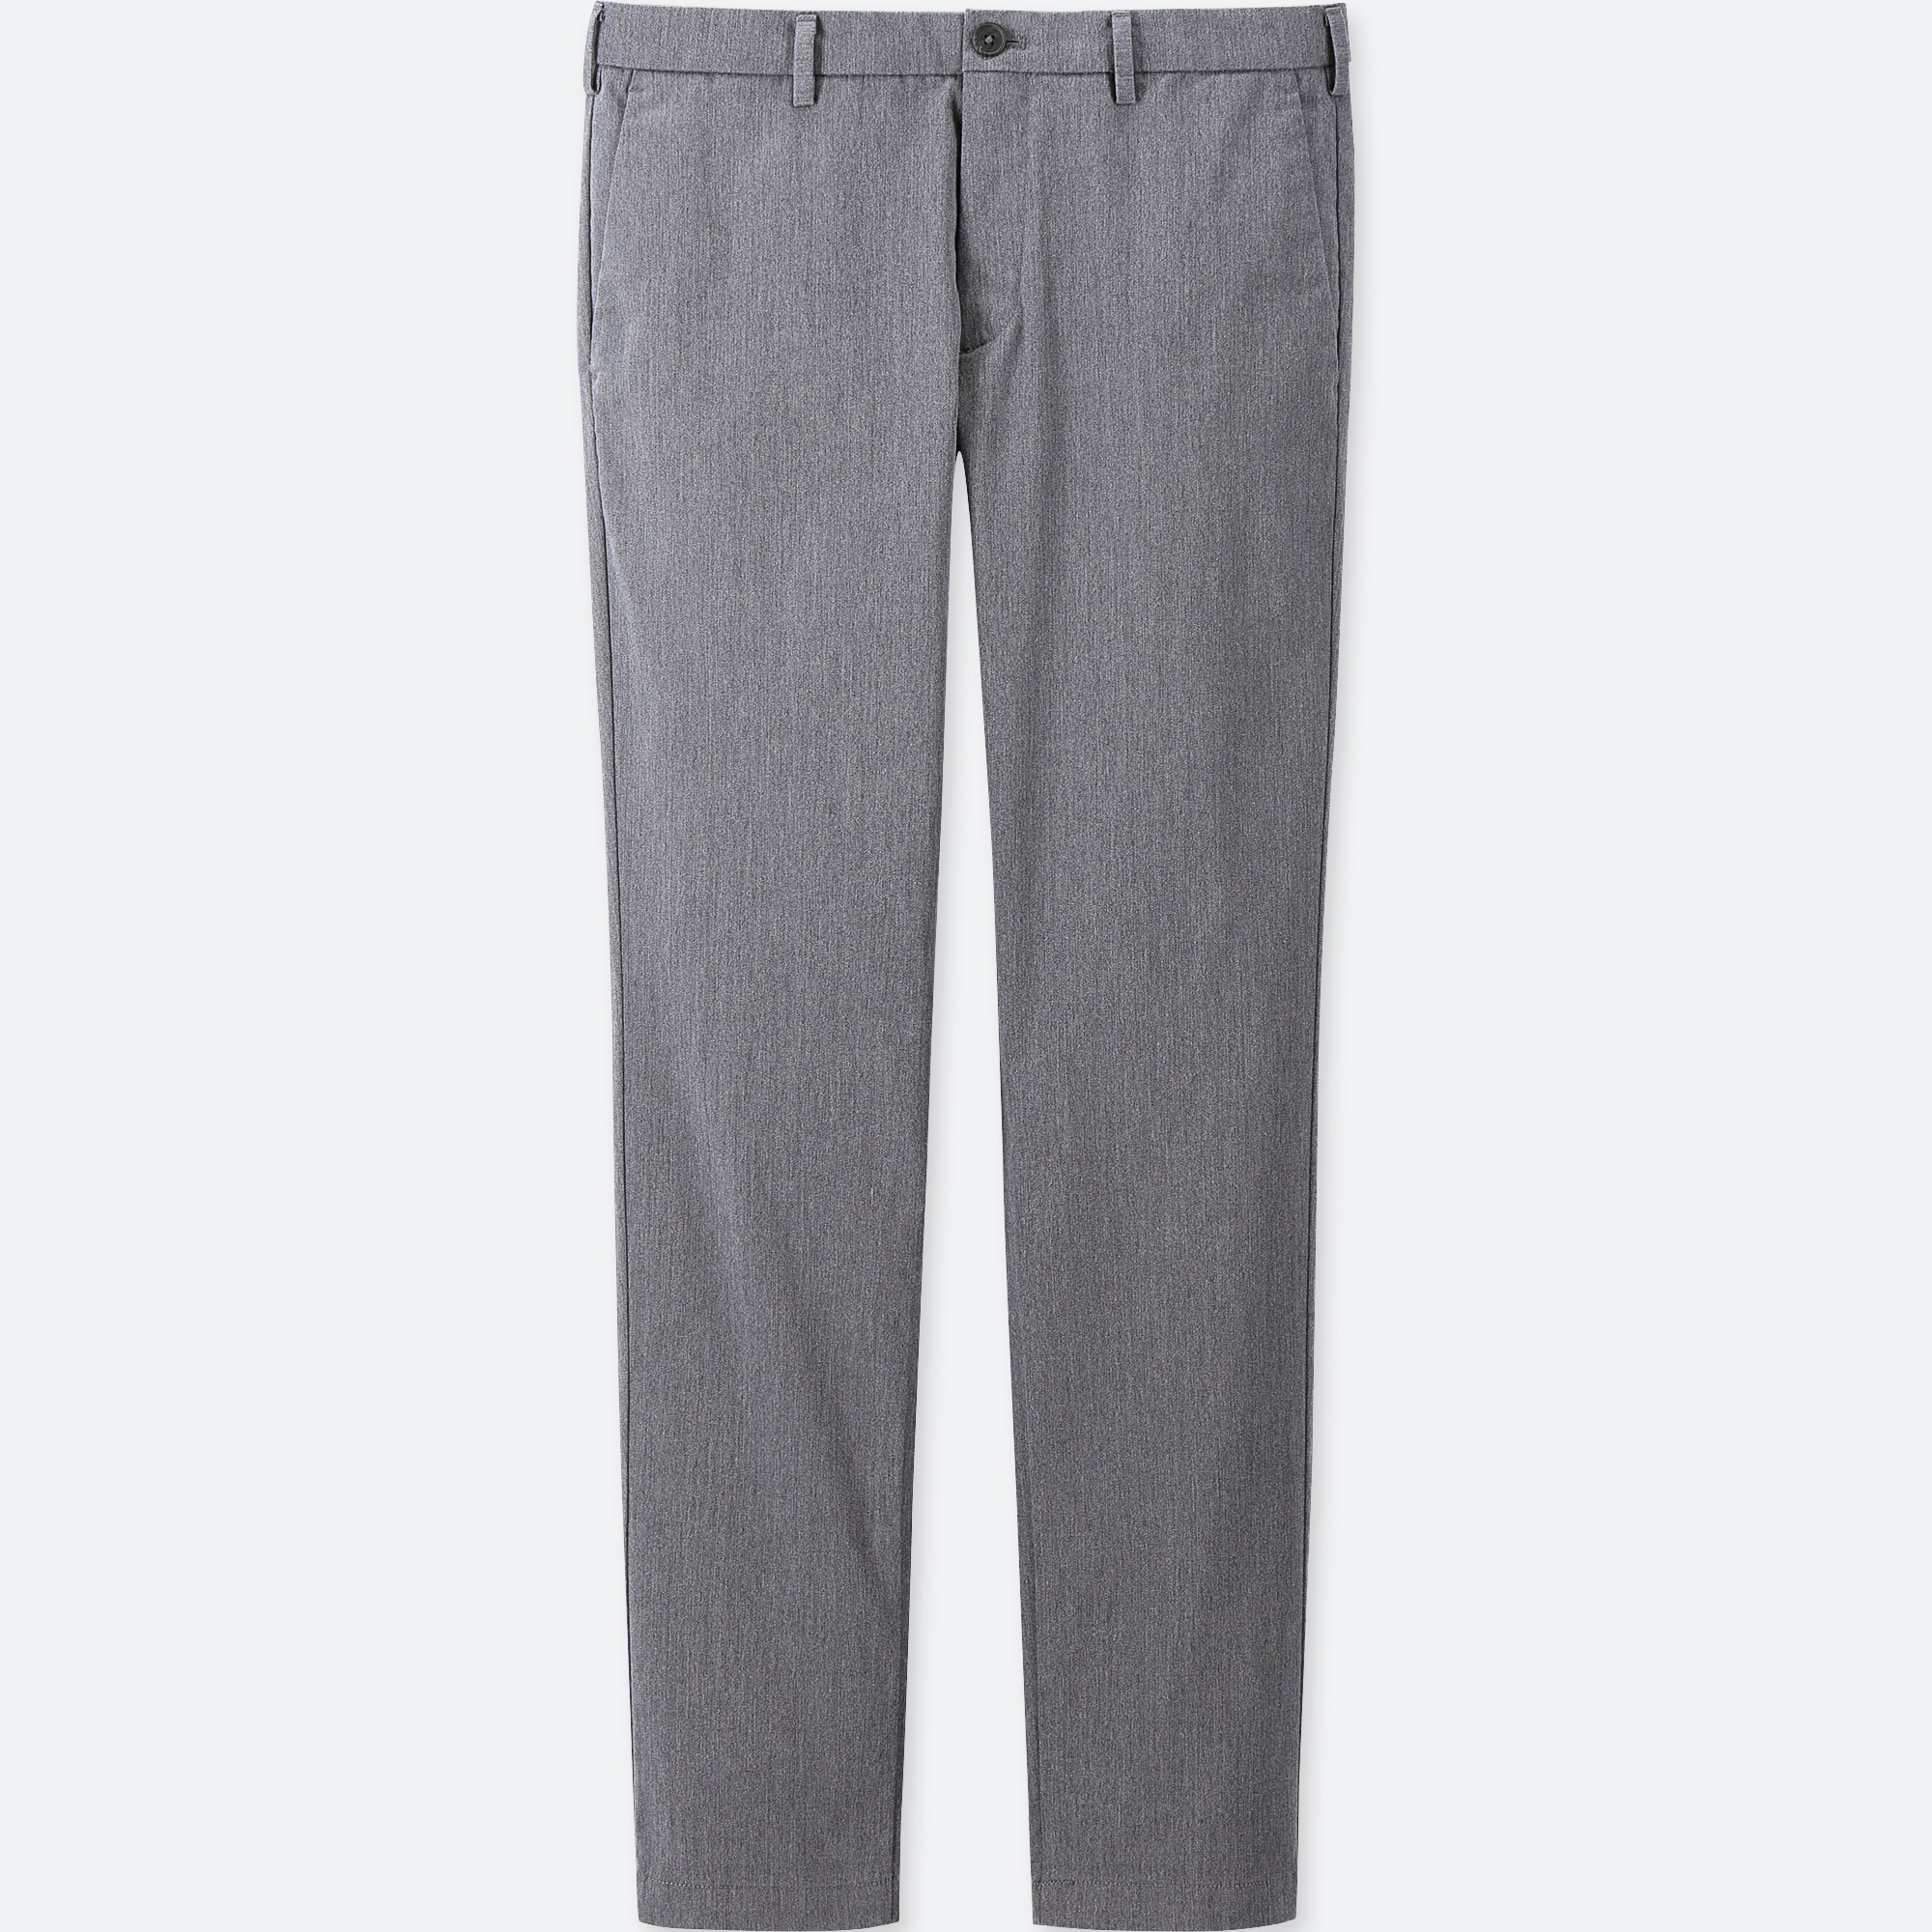 chino grey pants